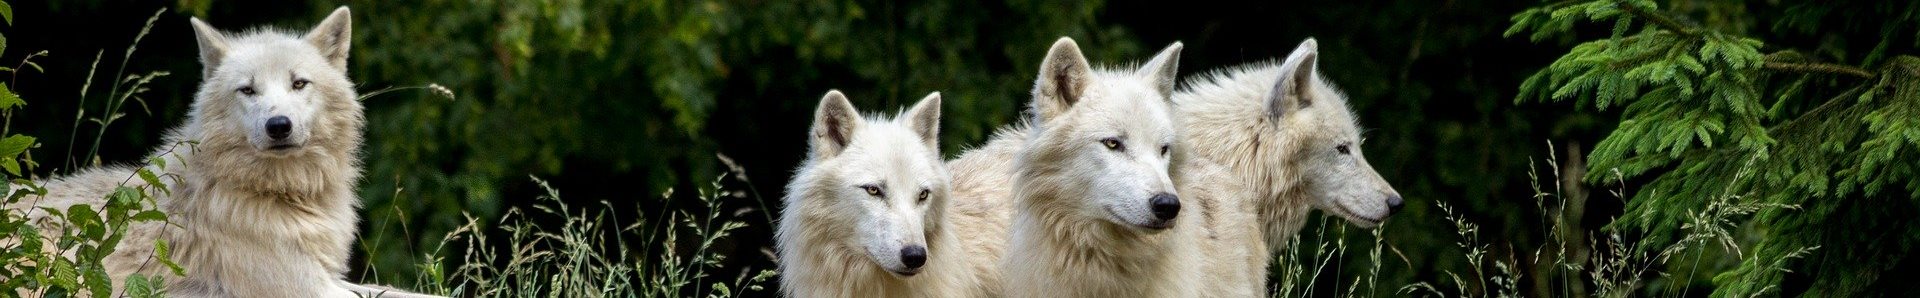 Bandeau Les Ptits Loups wolves 3785362 1920